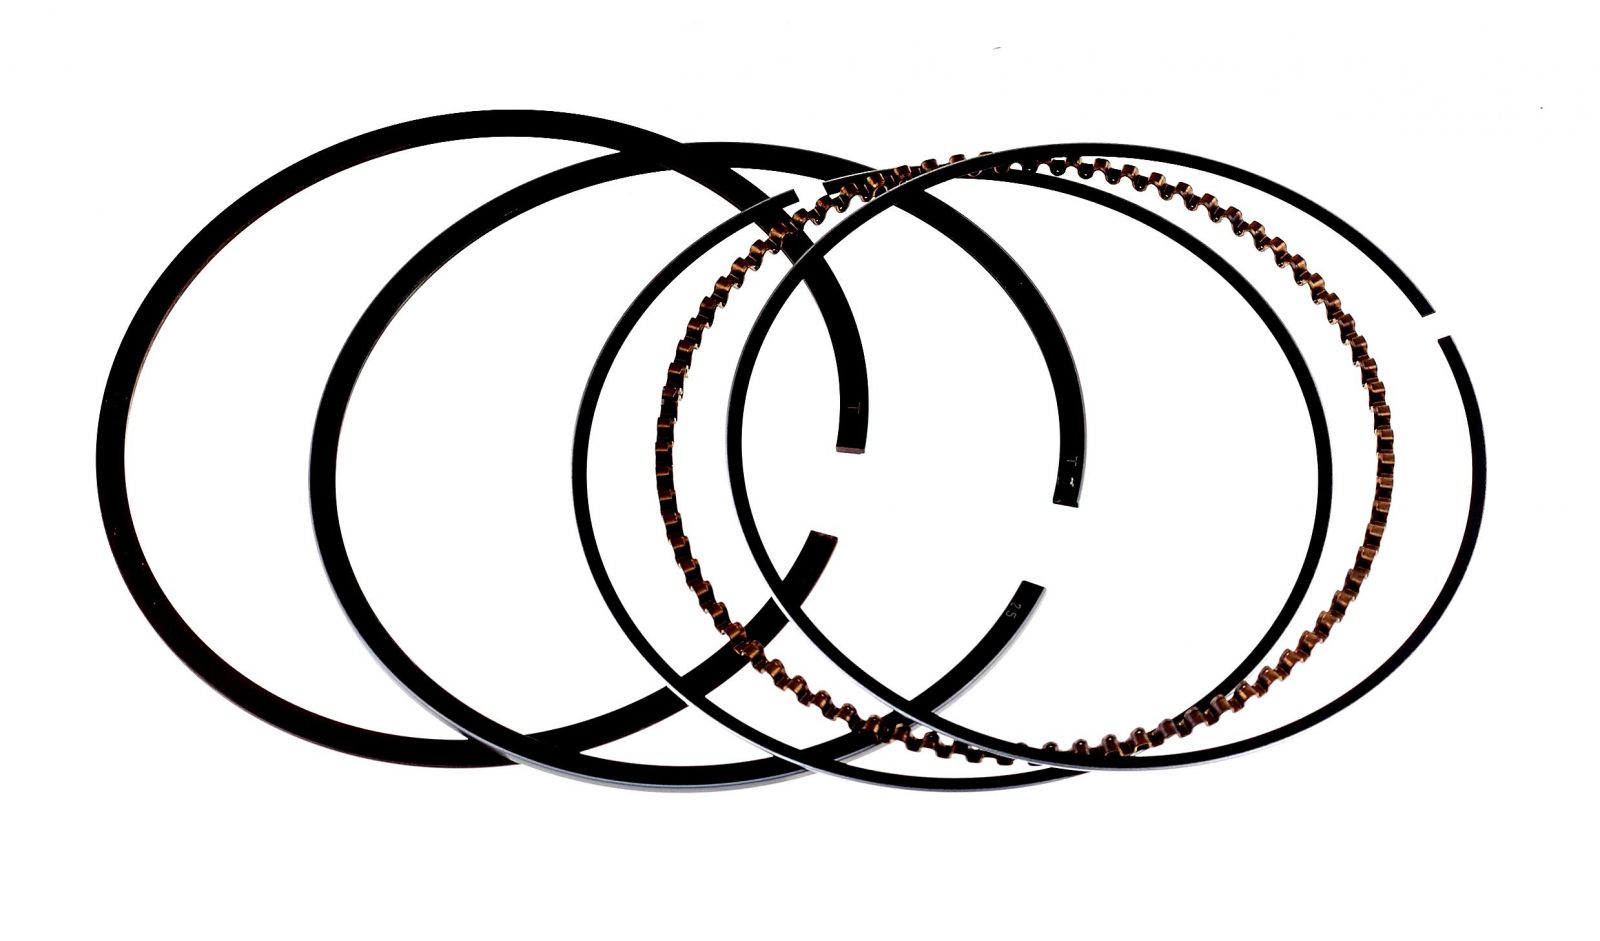 Pístní kroužky - sada ( HONDA GX270 - 1.výbrus /+0,25/)